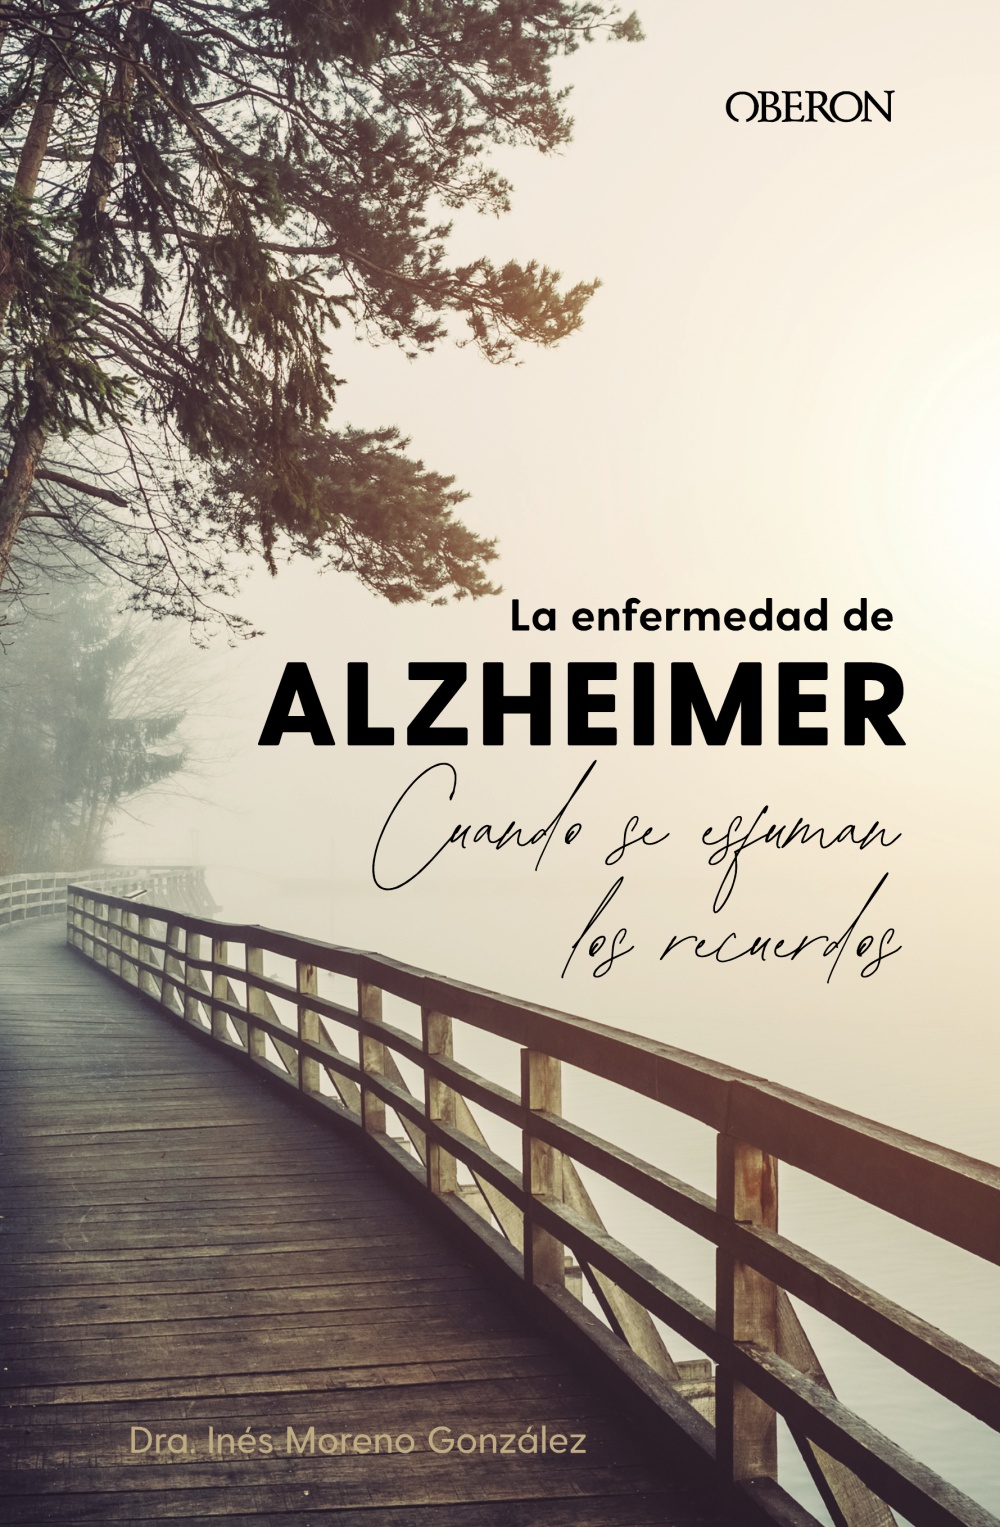 La enfermedad de Alzheimer. Cuando se esfuman los recuerdos -   